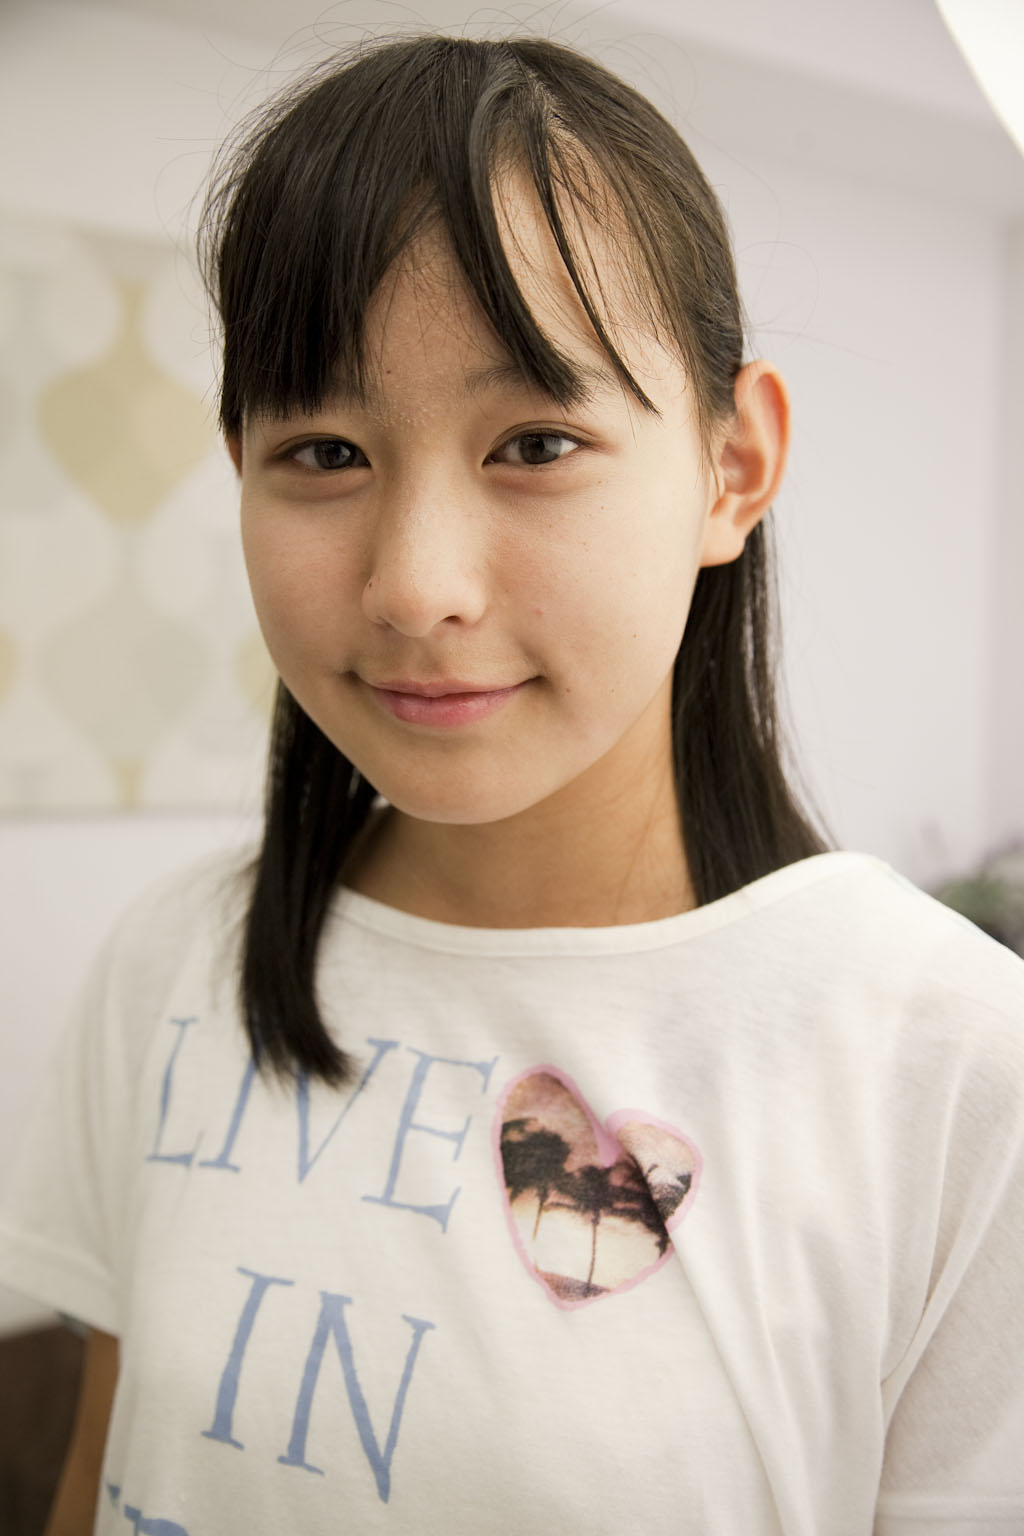 画像 : 【写真】15才美少女の美しさ【ジュニアアイドル】 - NAVER まとめ